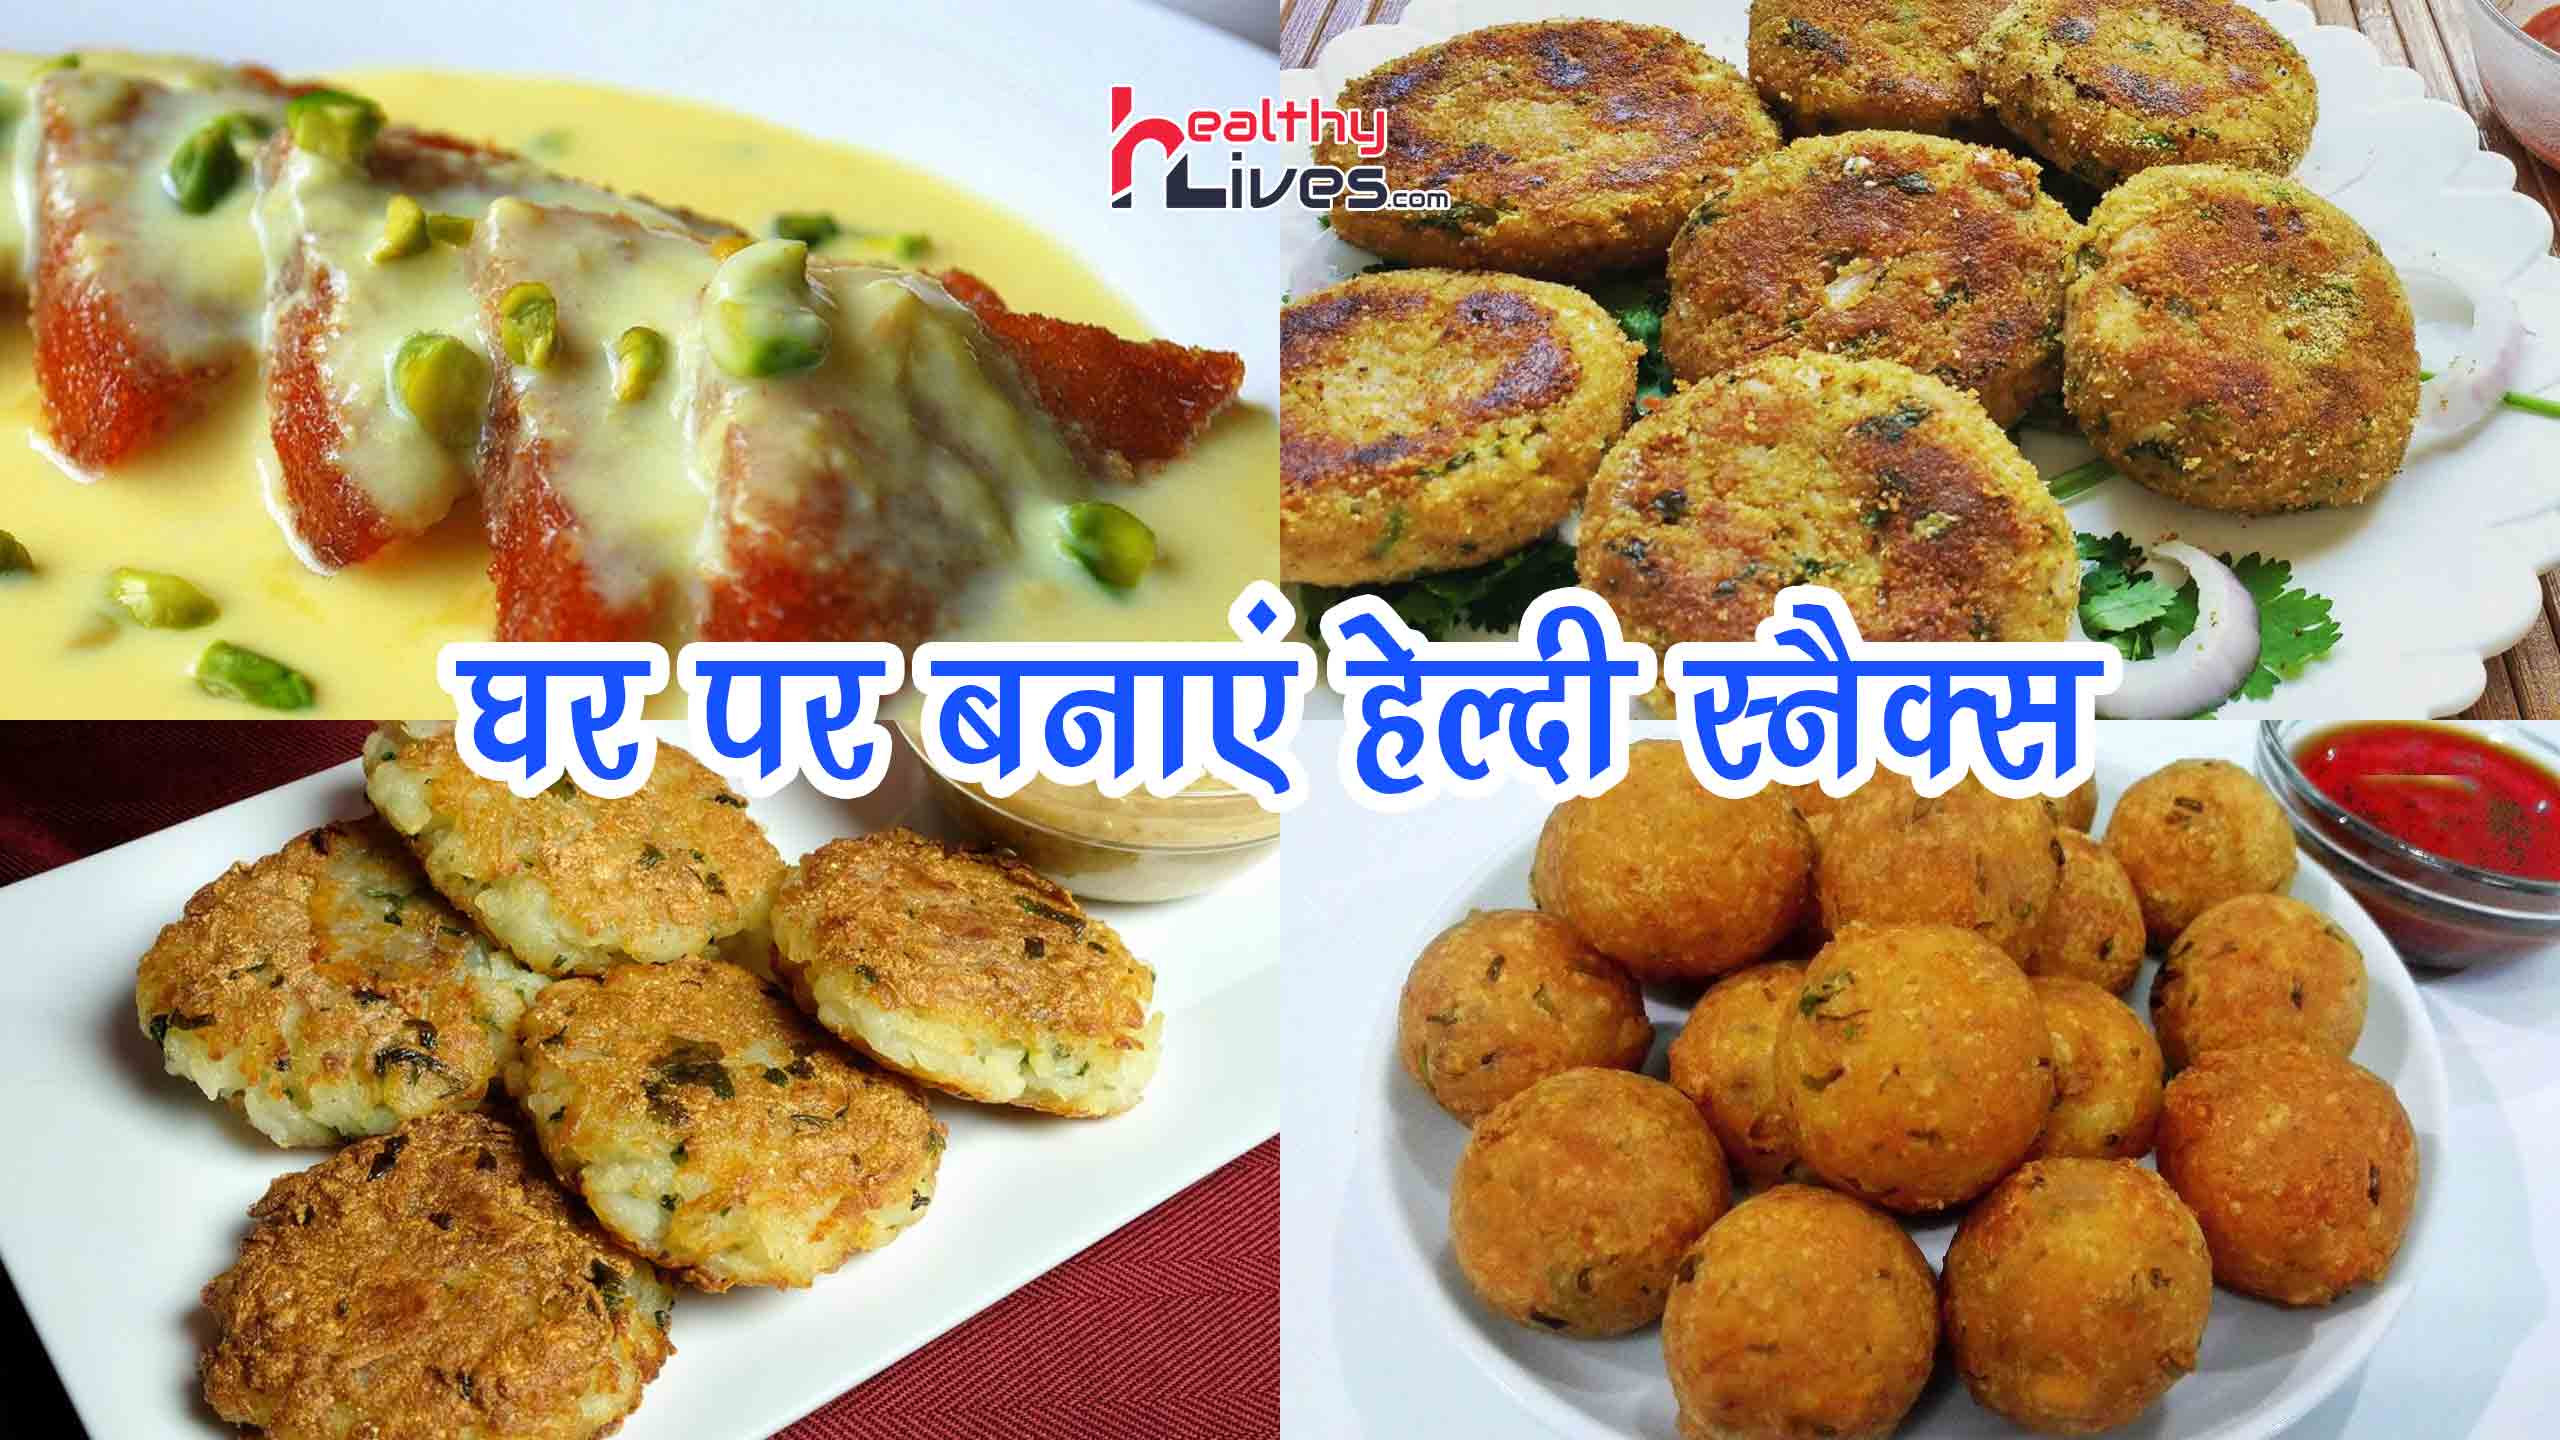 Snacks Recipes in Hindi: झटपट भूख मिटायें इन स्नैक्स रेसिपीज के संग